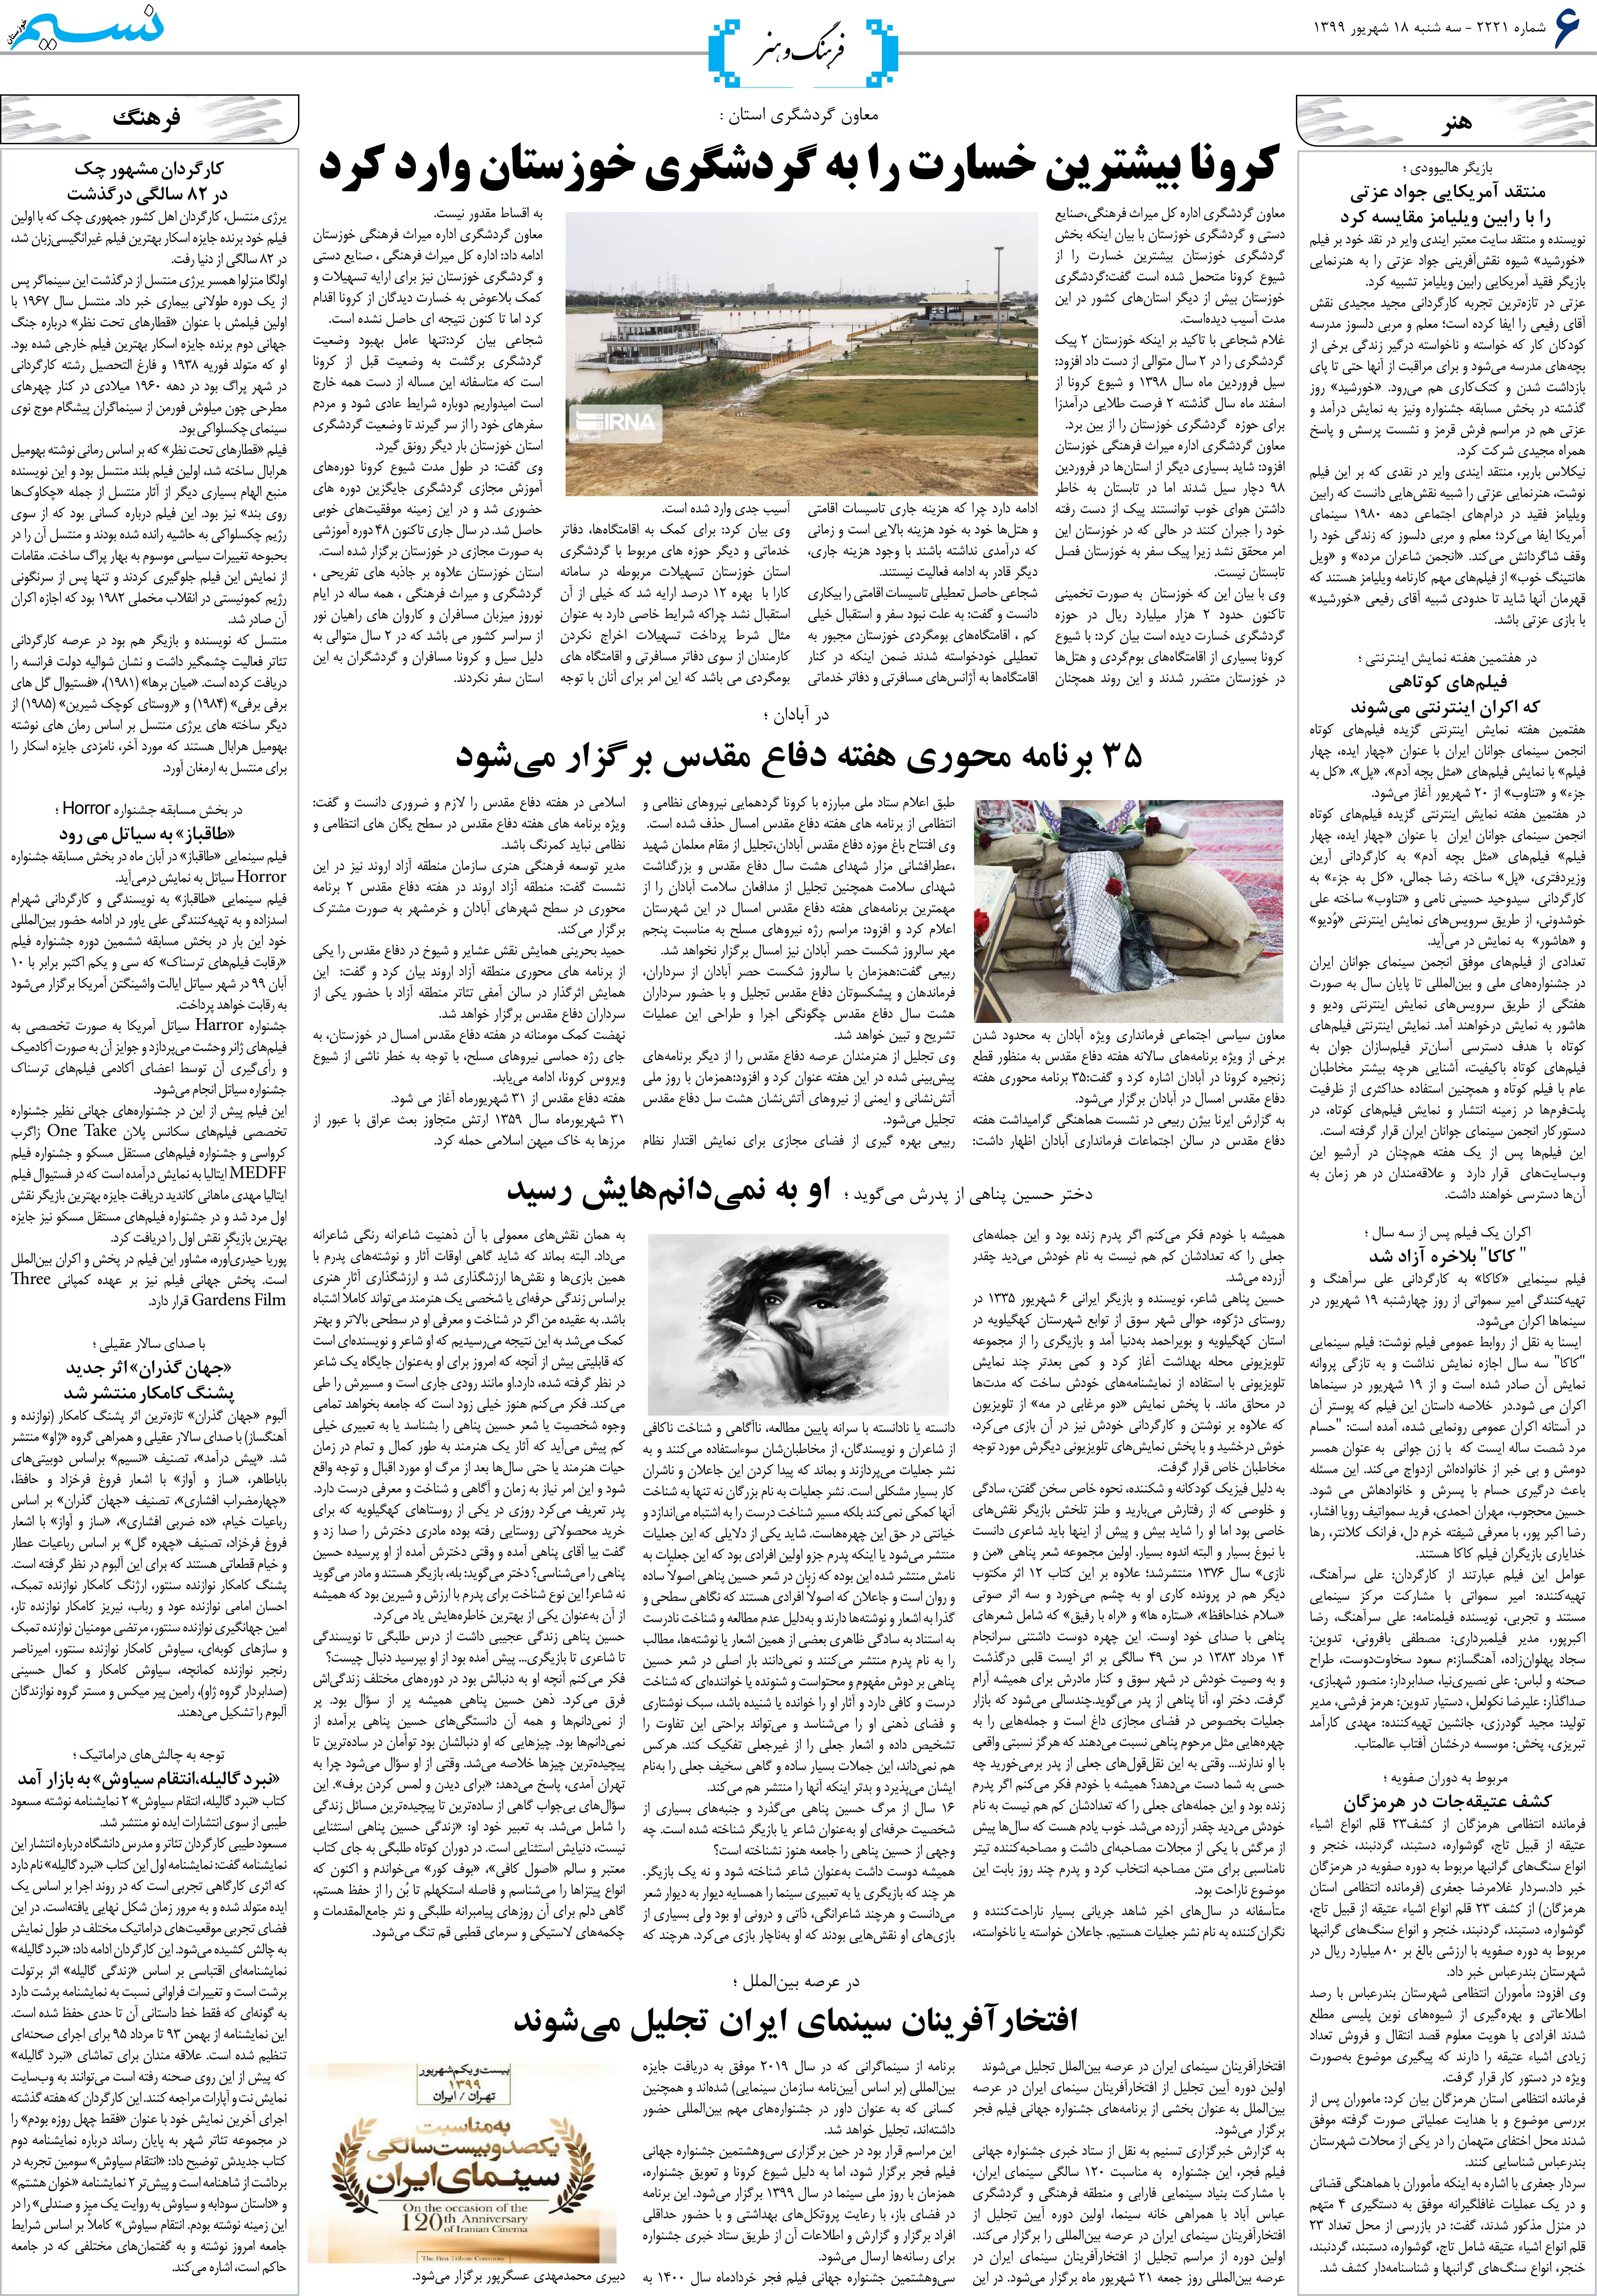 صفحه فرهنگ و هنر روزنامه نسیم شماره 2221